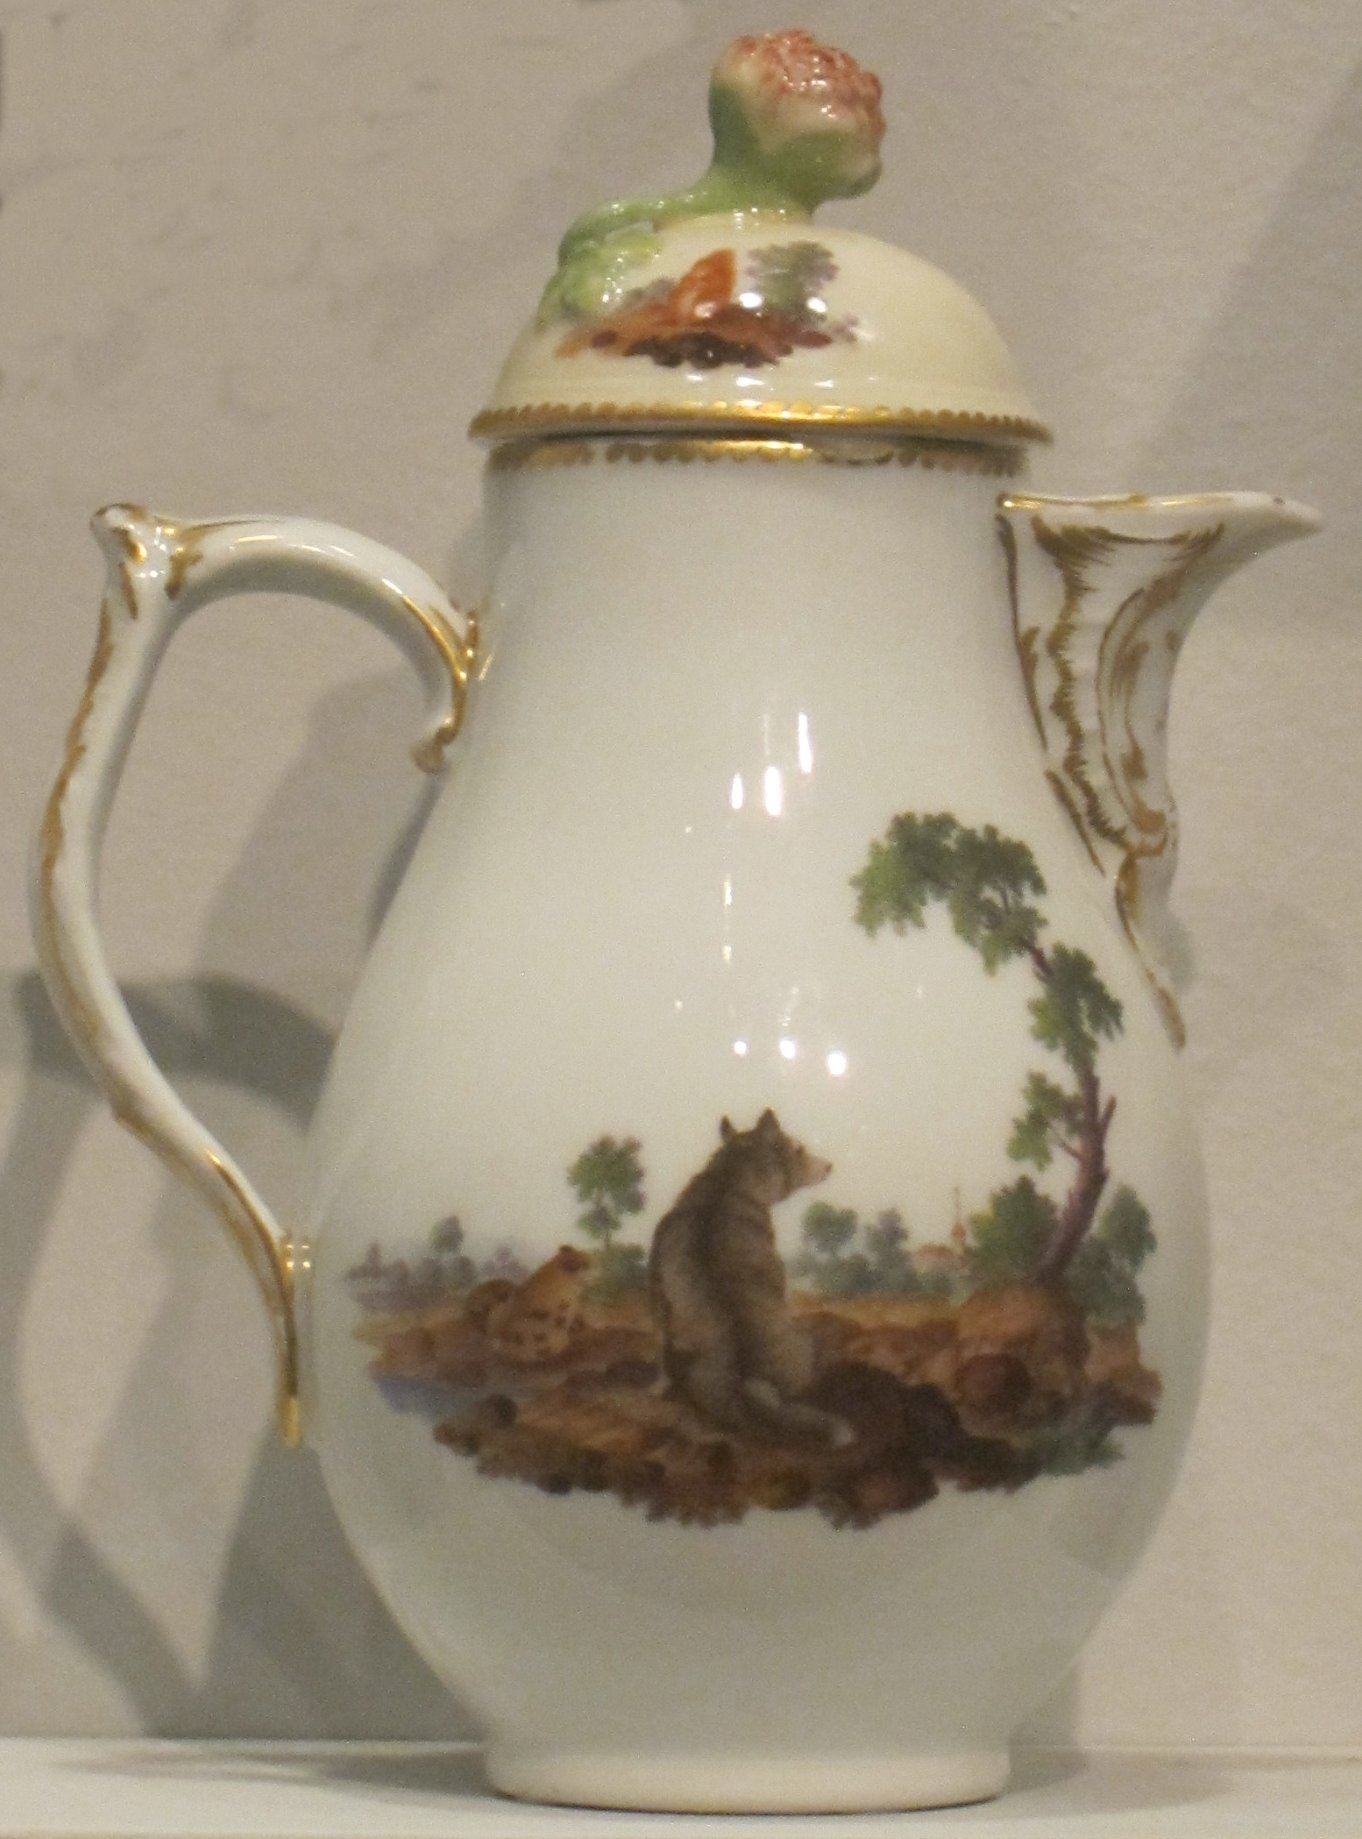 https://upload.wikimedia.org/wikipedia/commons/3/3c/Coffee_pot_from_German_hard-paste_porcelain_breakfast_set%2C_c._1765%2C_Berlin%2C_Honolulu_Museum_of_Art.JPG